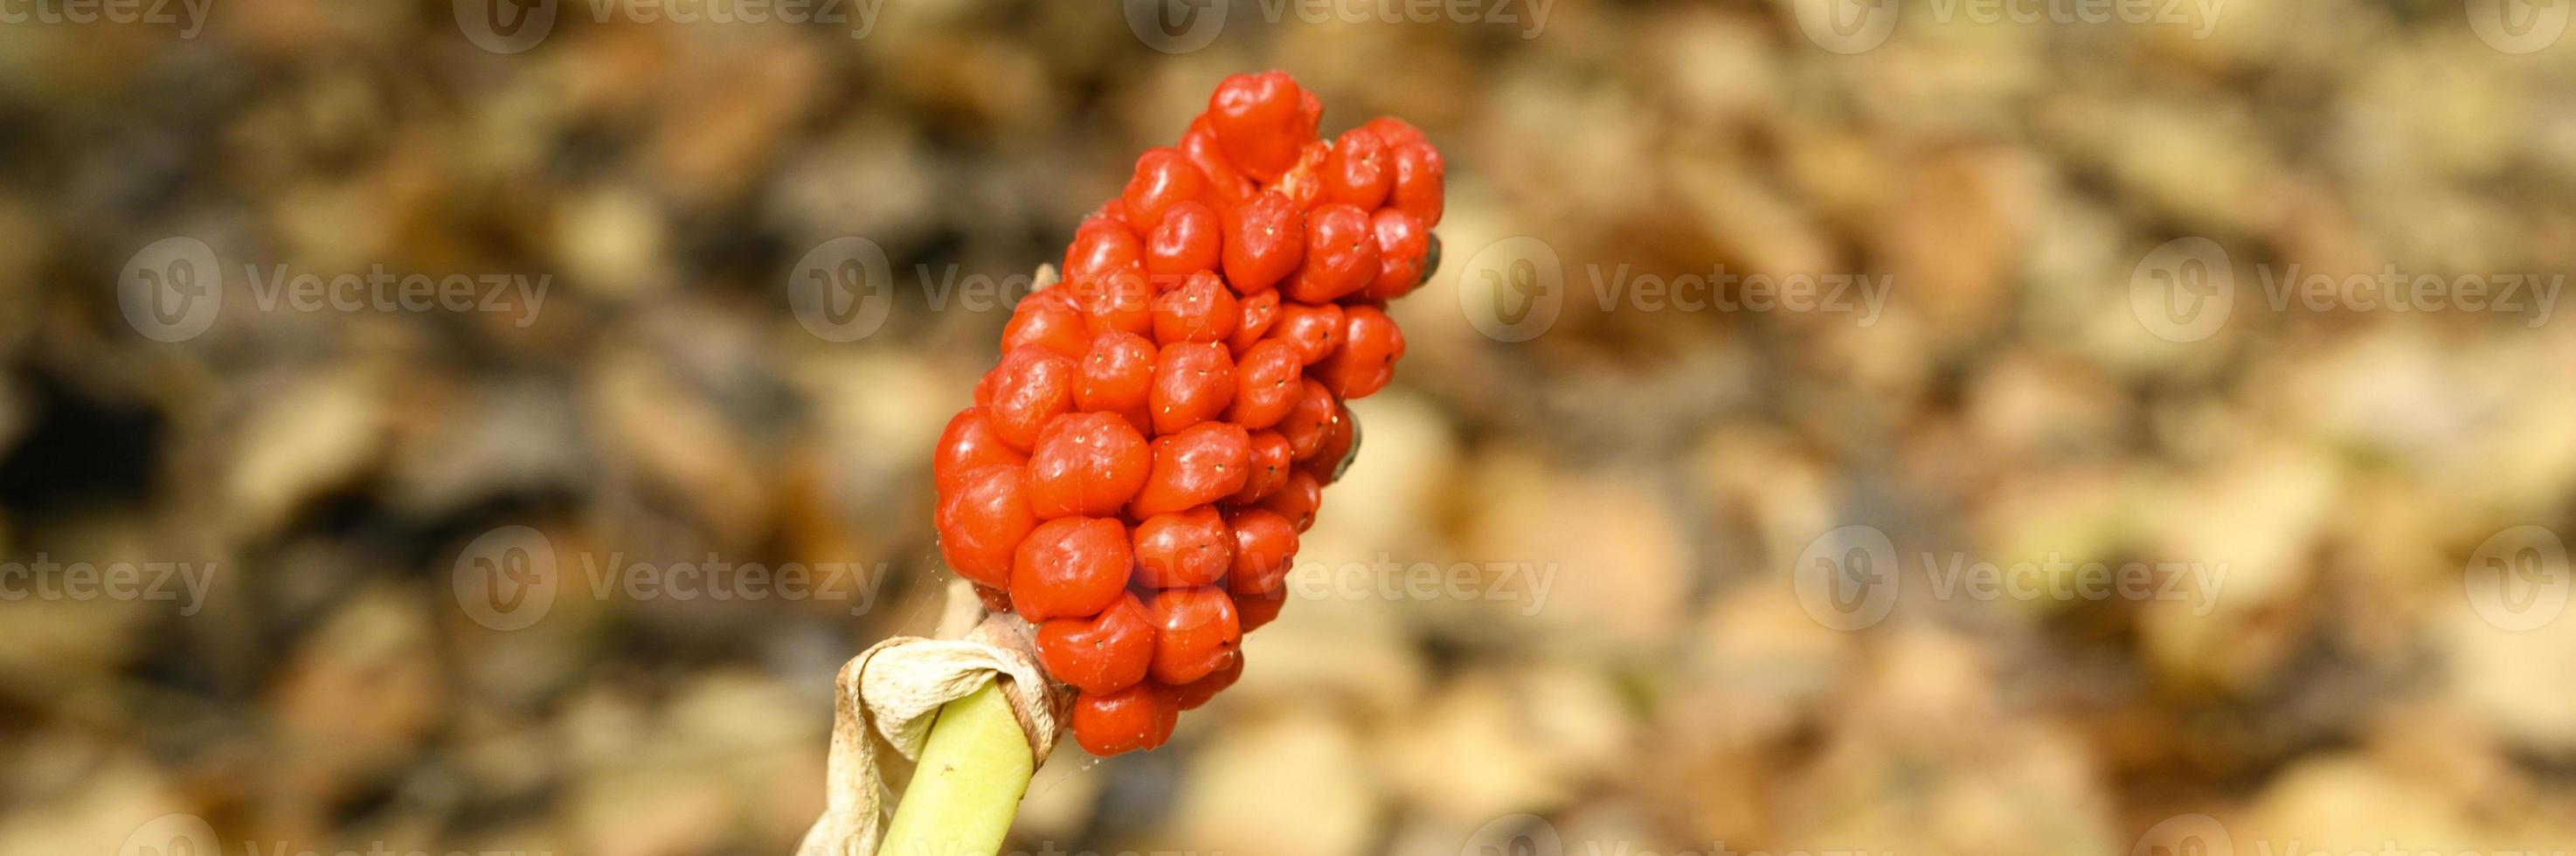 aronskelk plant met rijpe rode bessen in het bos foto